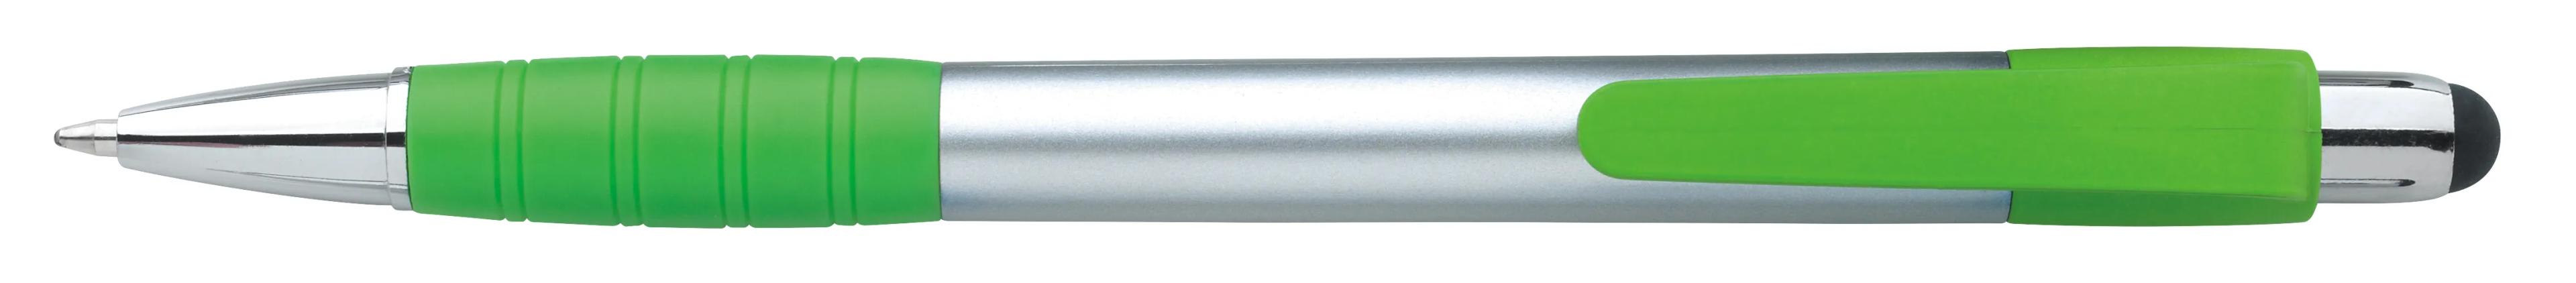 Silver Element Stylus Pen 10 of 53